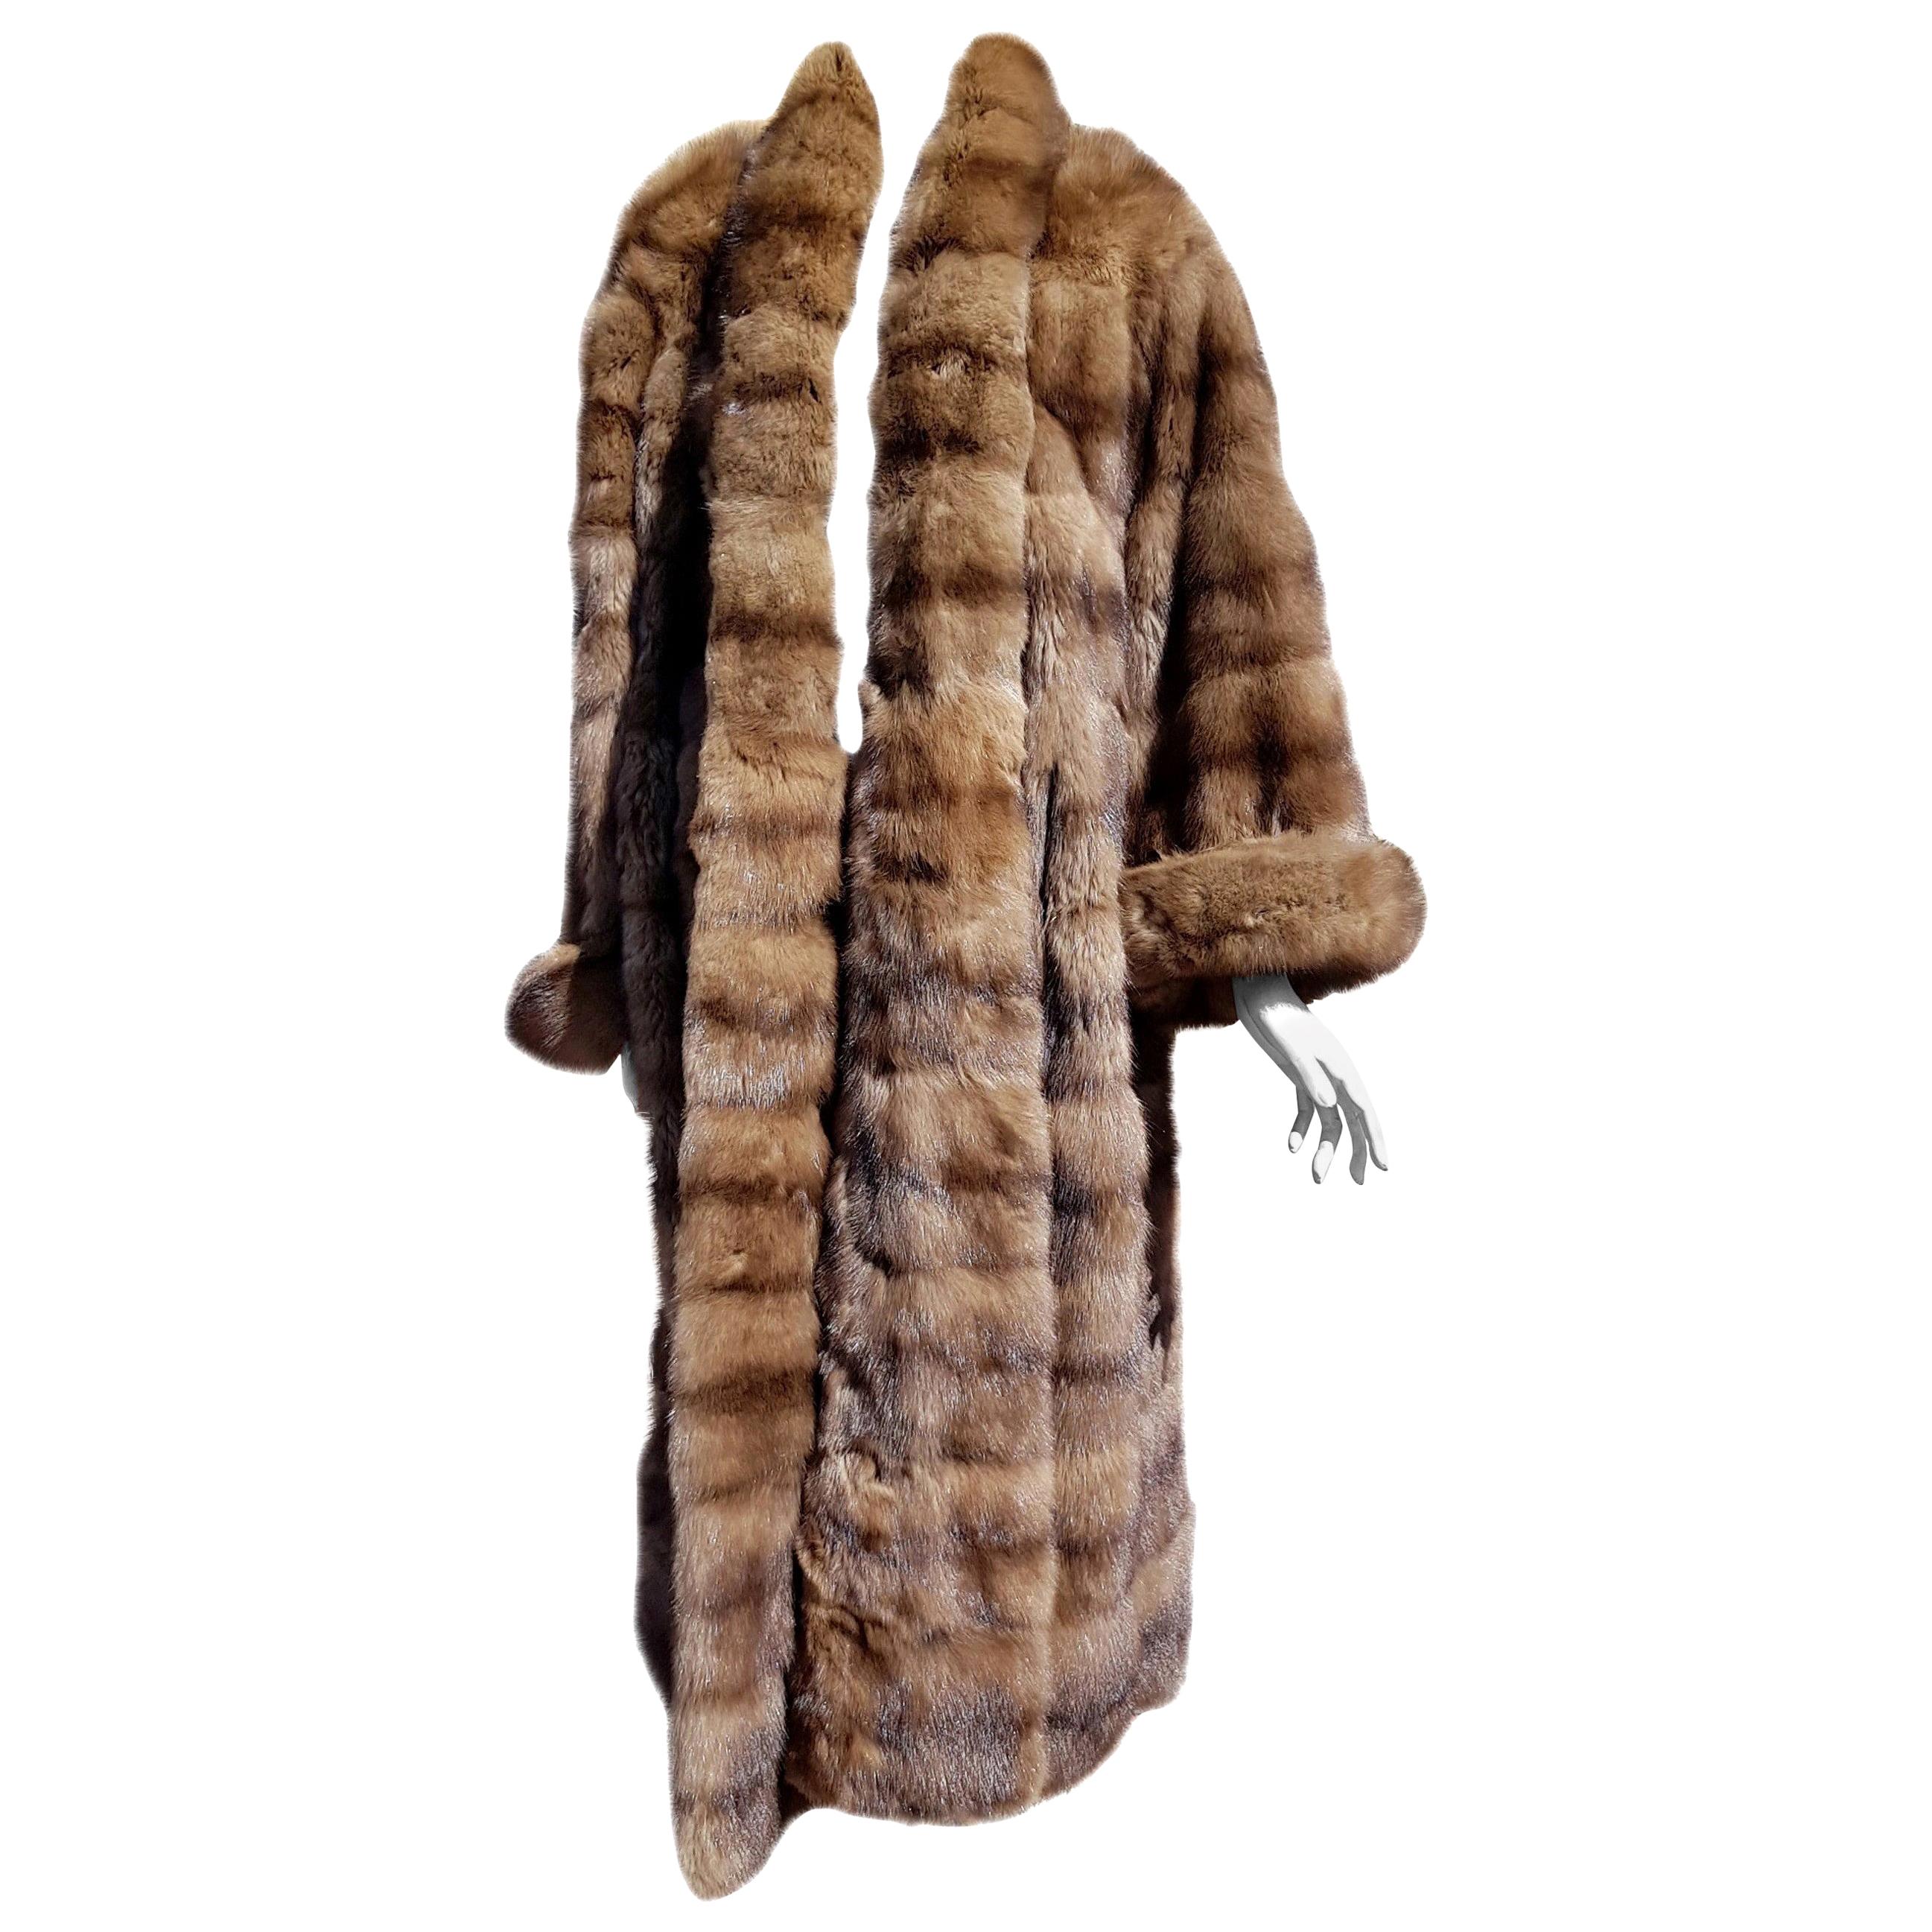 Gianfranco FERRÉ Haute Couture Wild Russian Whole Skins Barguzinsky Sable Fur For Sale